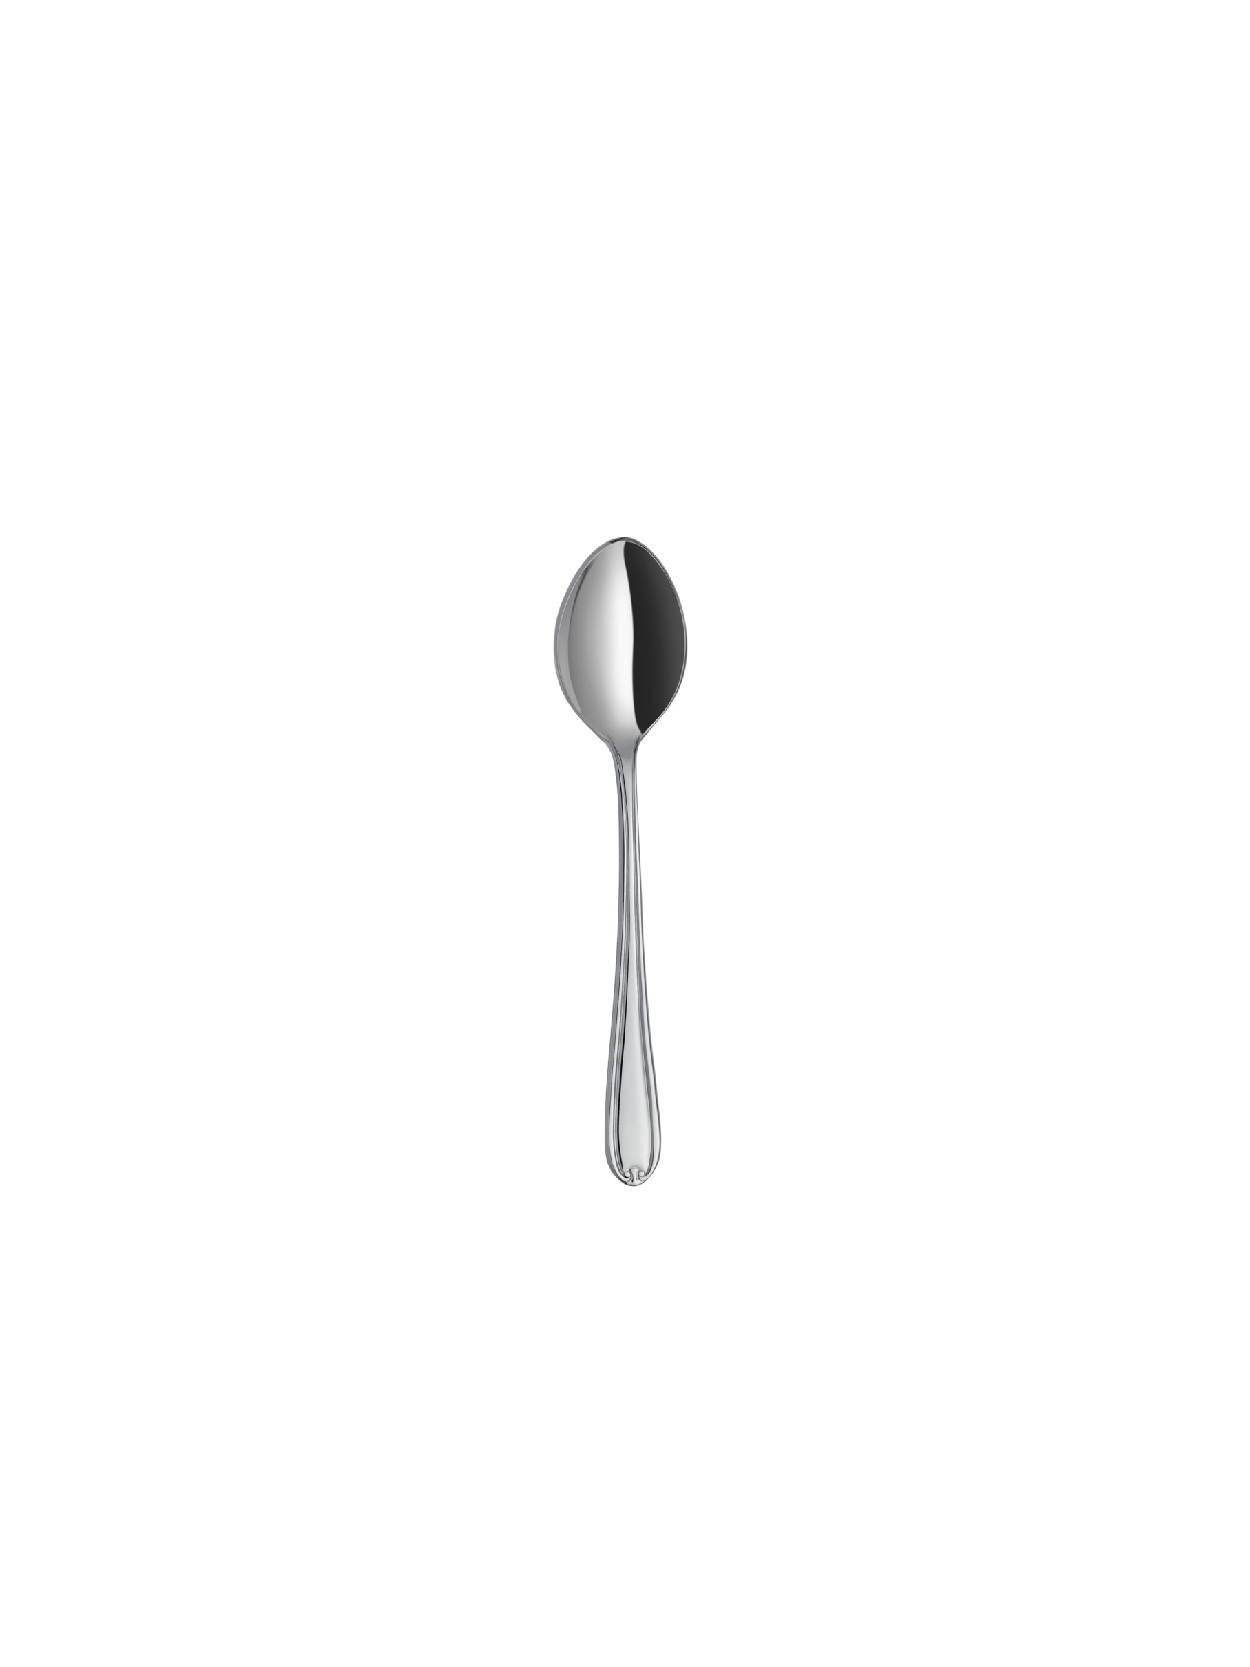 Anatolia - Plain - Tea Spoon (6 pcs)